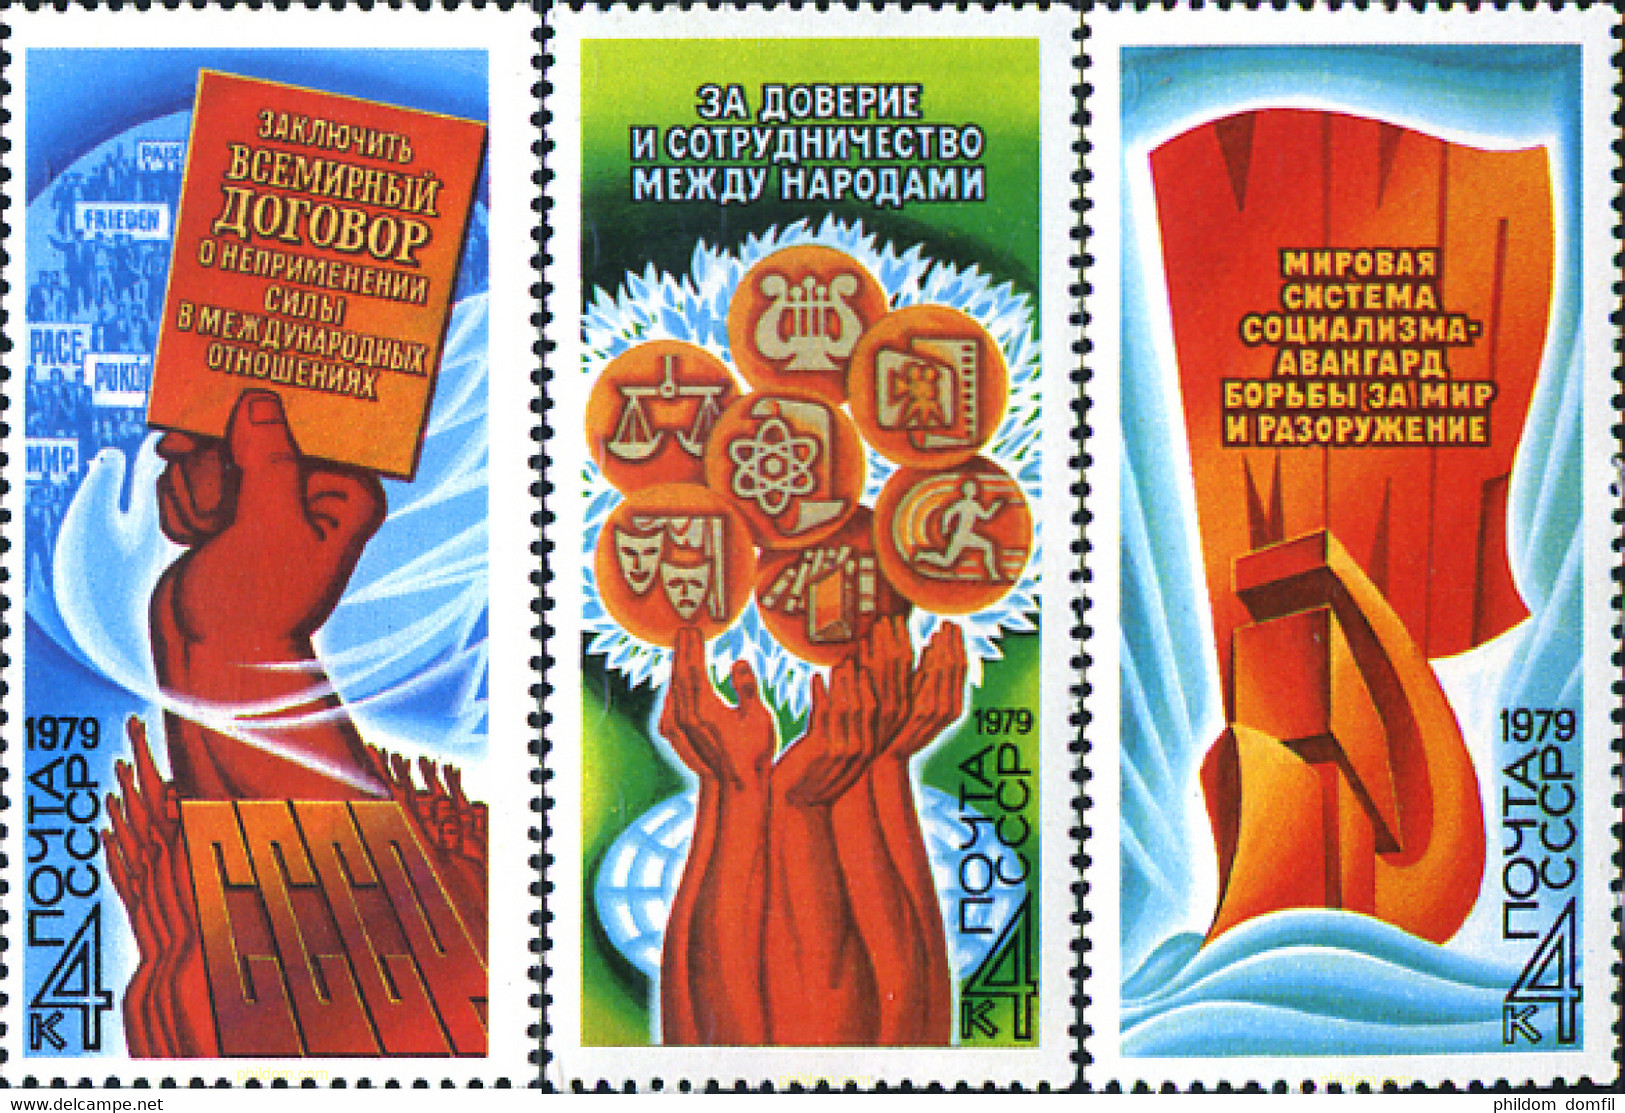 63410 MNH UNION SOVIETICA 1979 PAZ - Collezioni